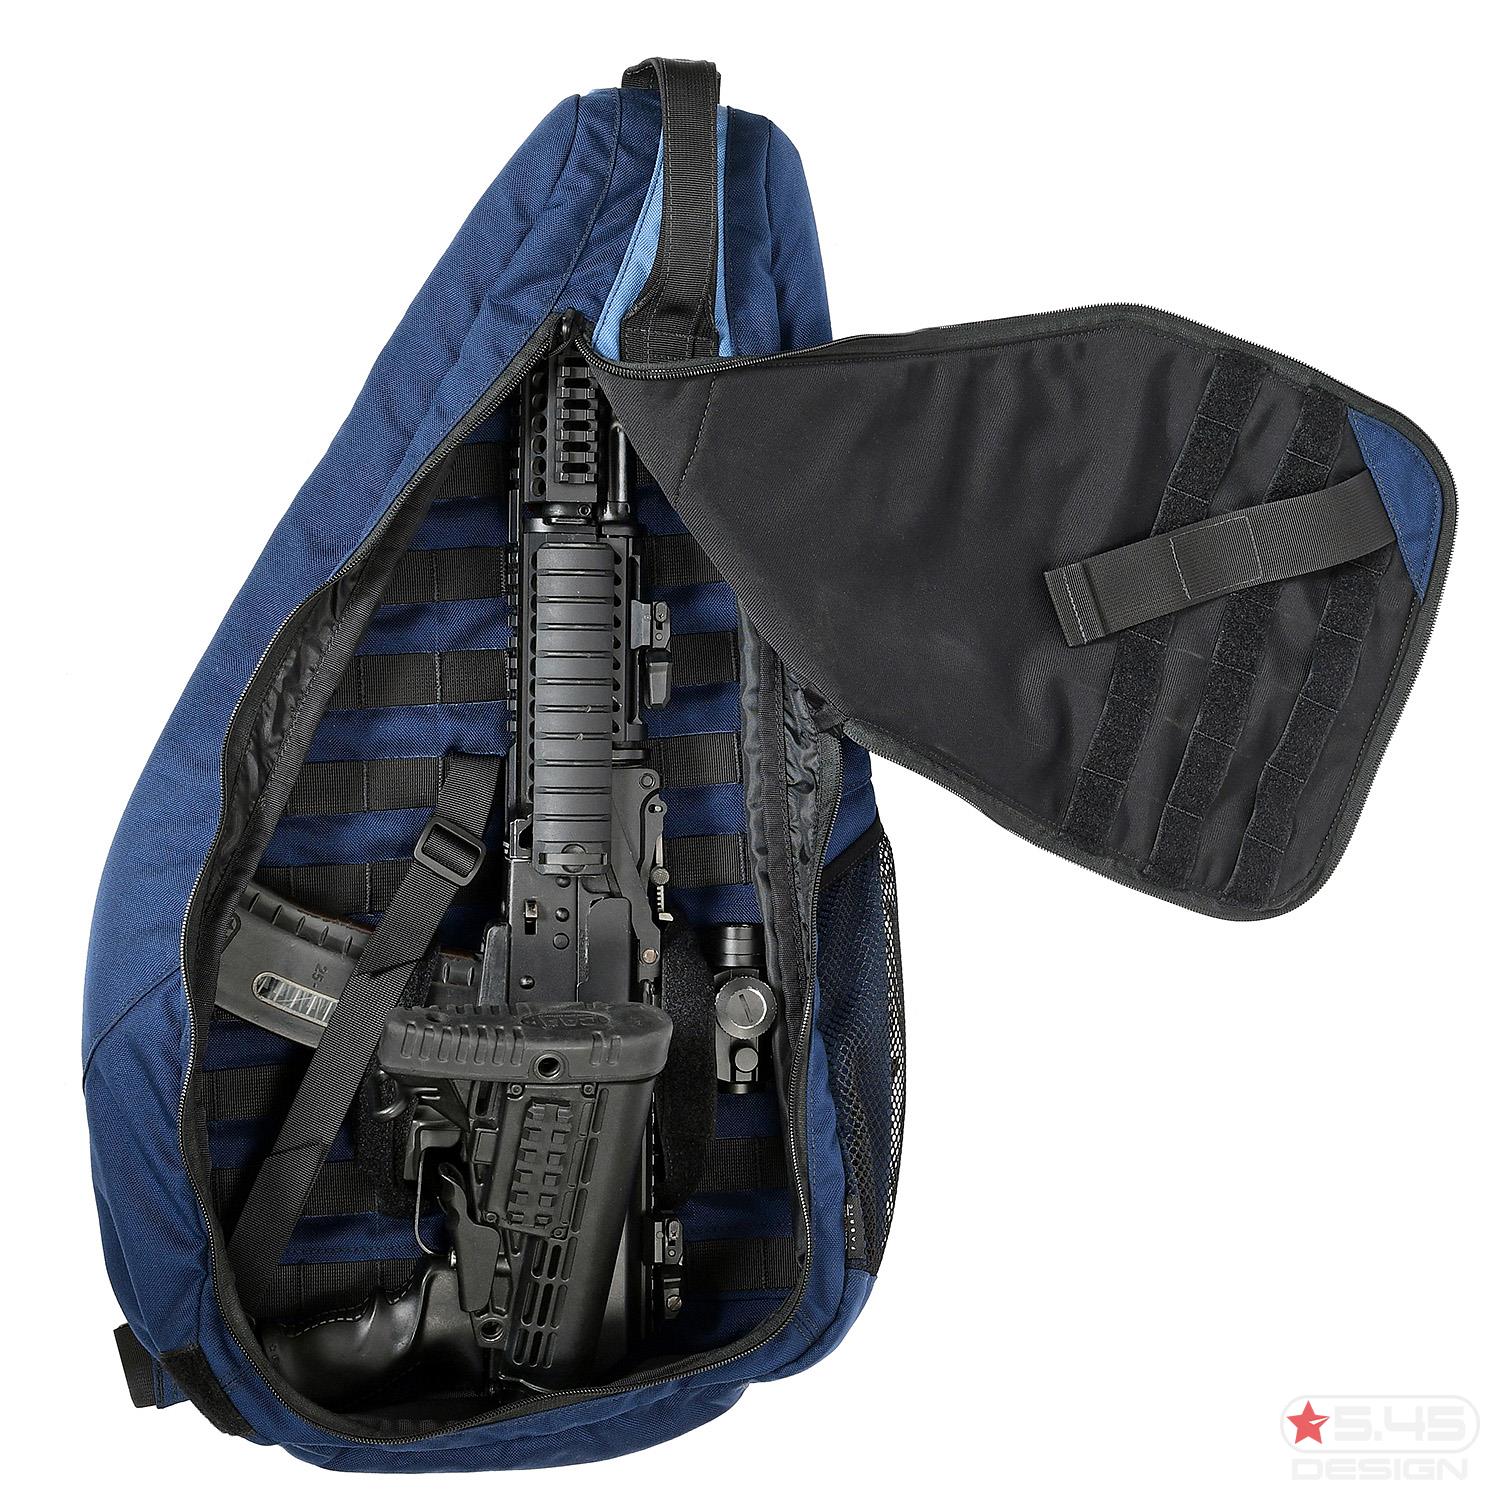 В скрытом кармане, расположенном в спинке сумки, предусмотрены прорезиненные соты, предназначенные для дополнительных магазинов оружия.